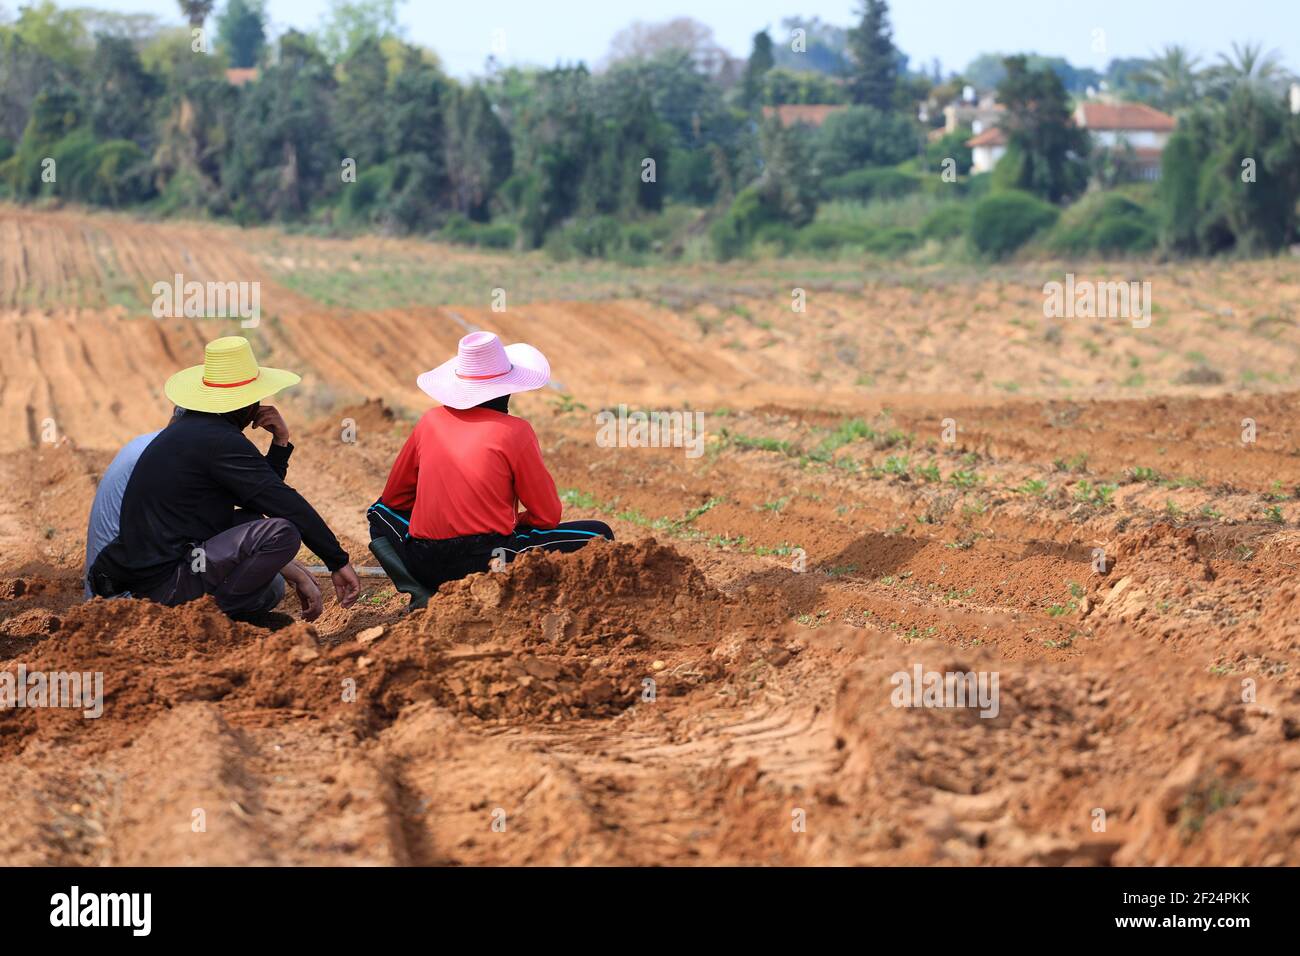 Farmer rest in a plowed potato field. Stock Photo